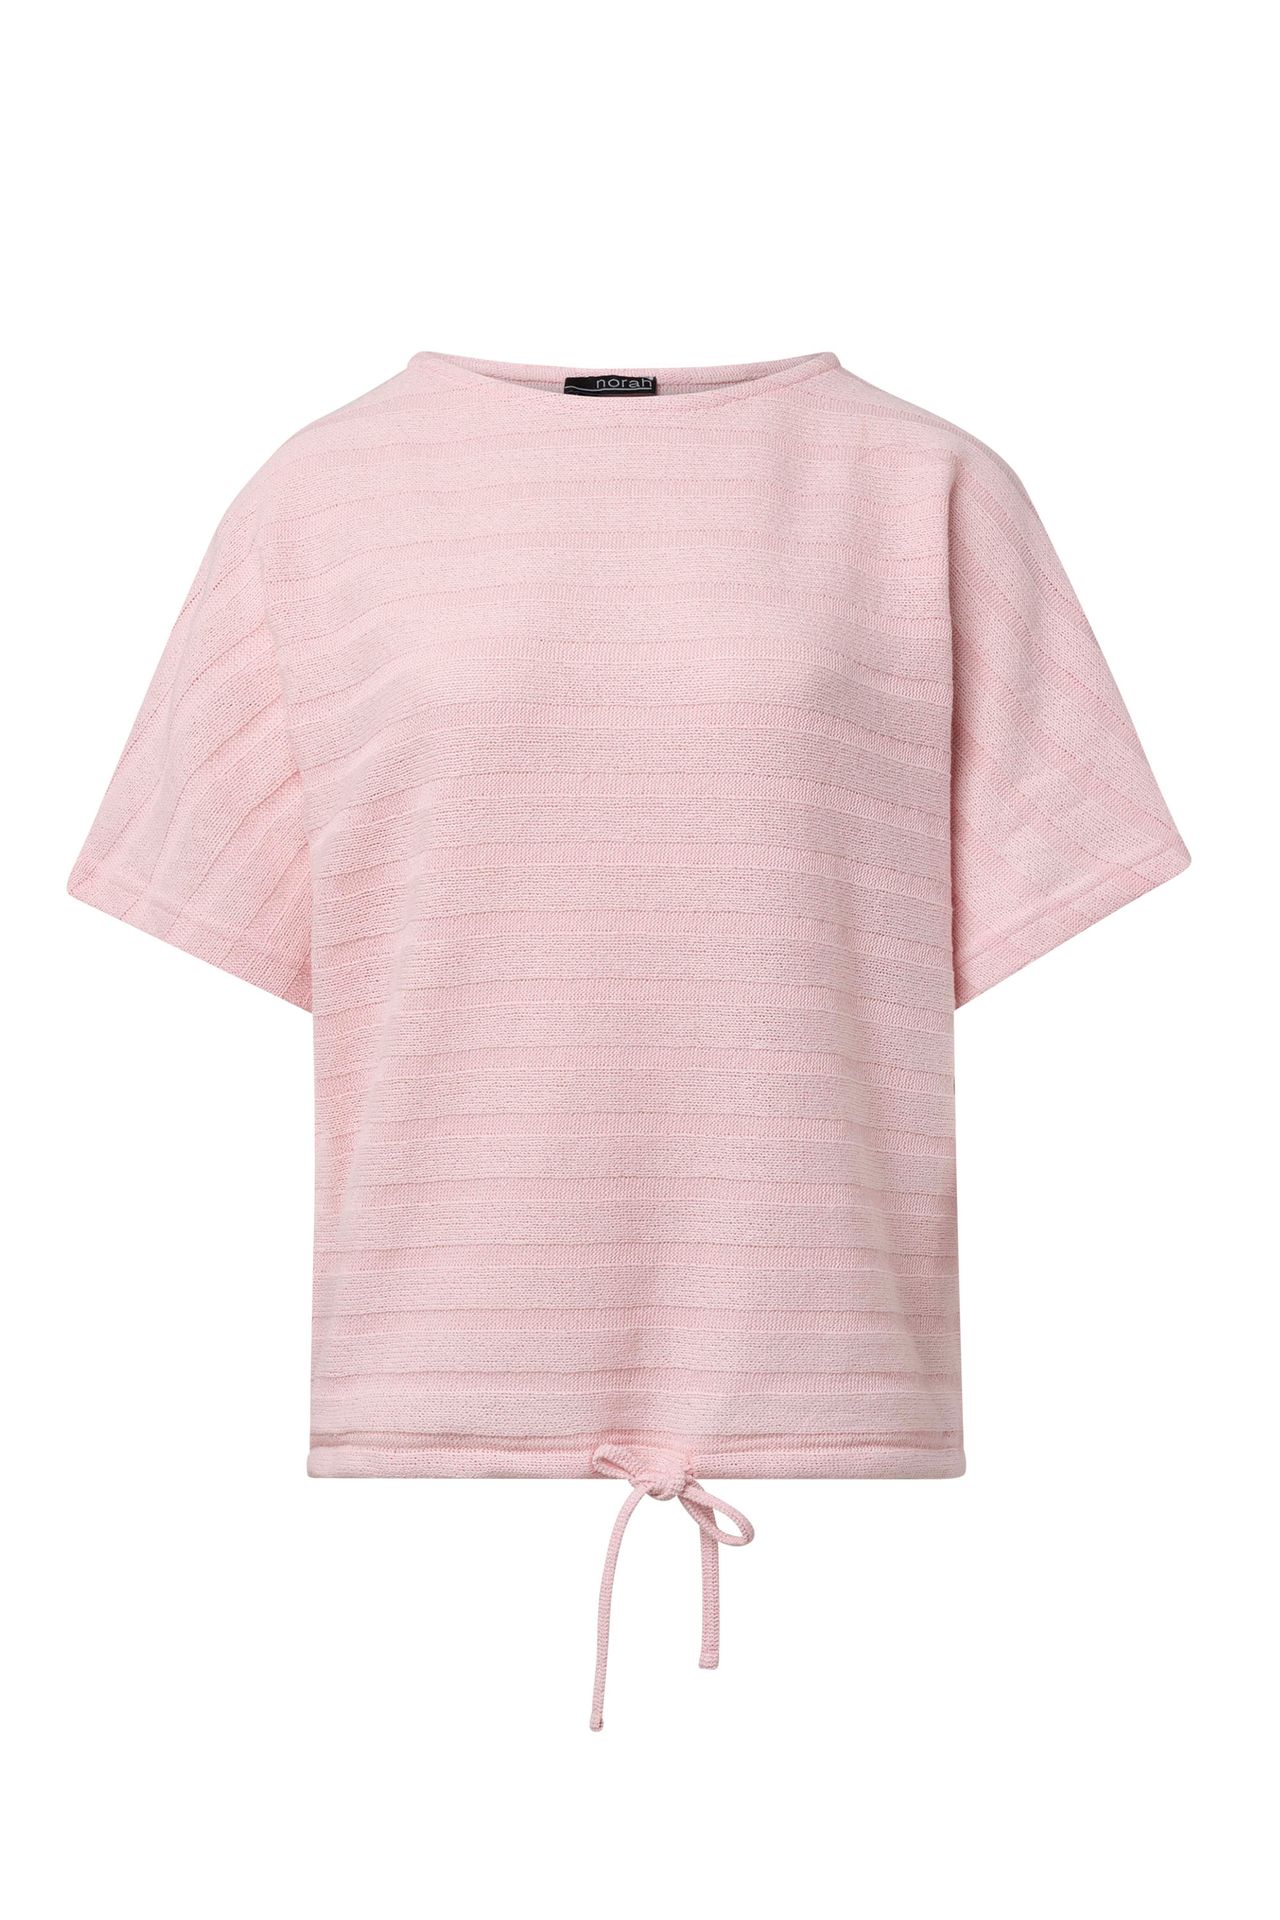 Norah Roze fijngebreid shirt pink 215058-900